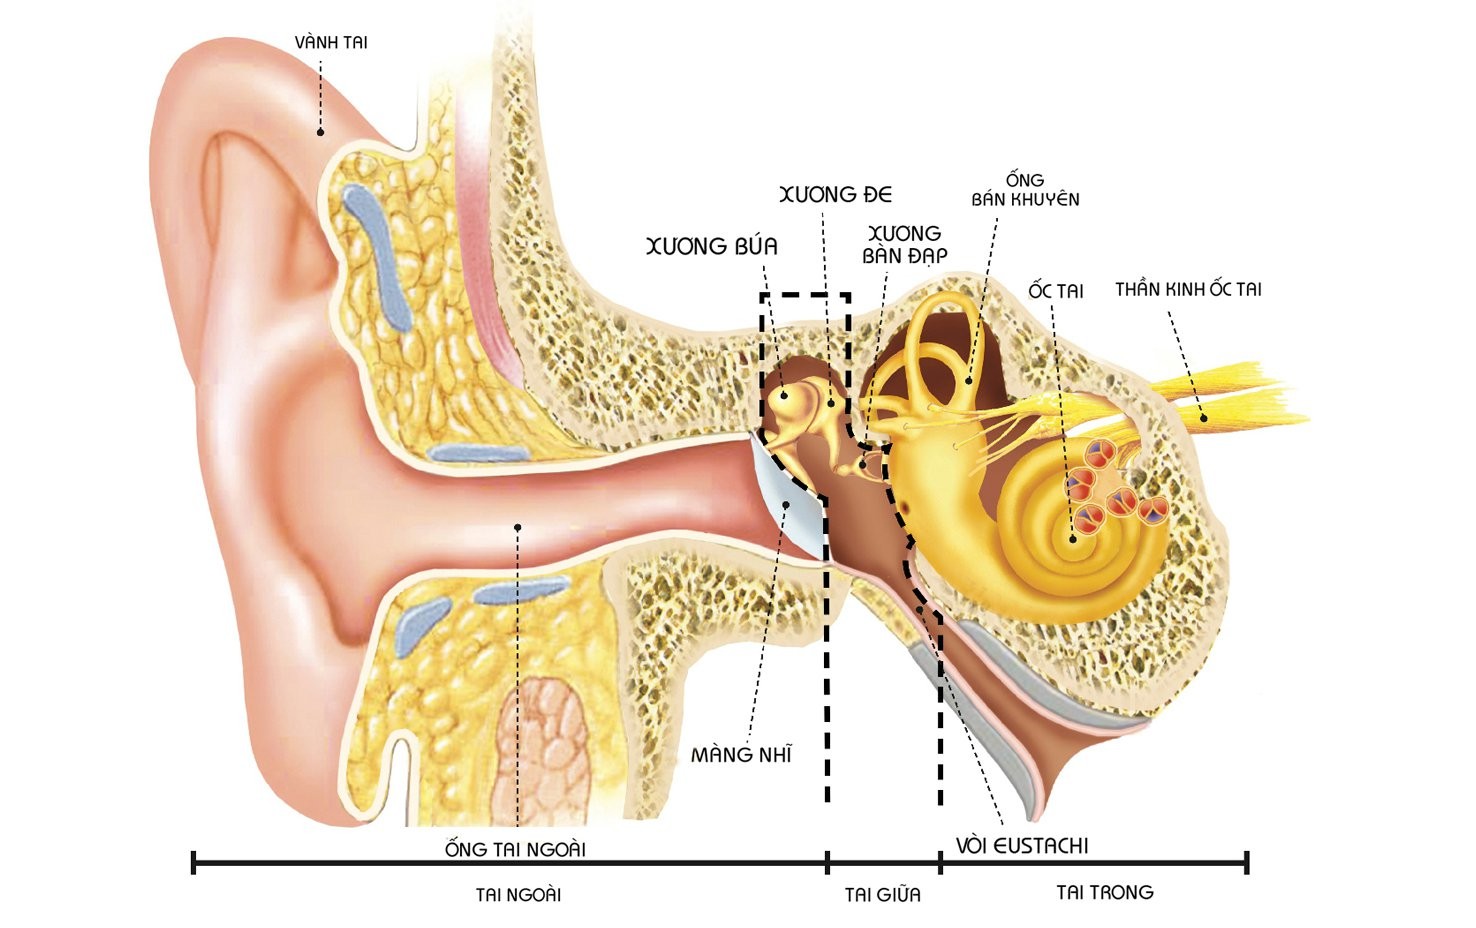 20161202 075401 037143 vicare.vn vien tai .max 1800x1800 Viêm tai giữa mạn tính   Nguyên nhân và cách điều trị